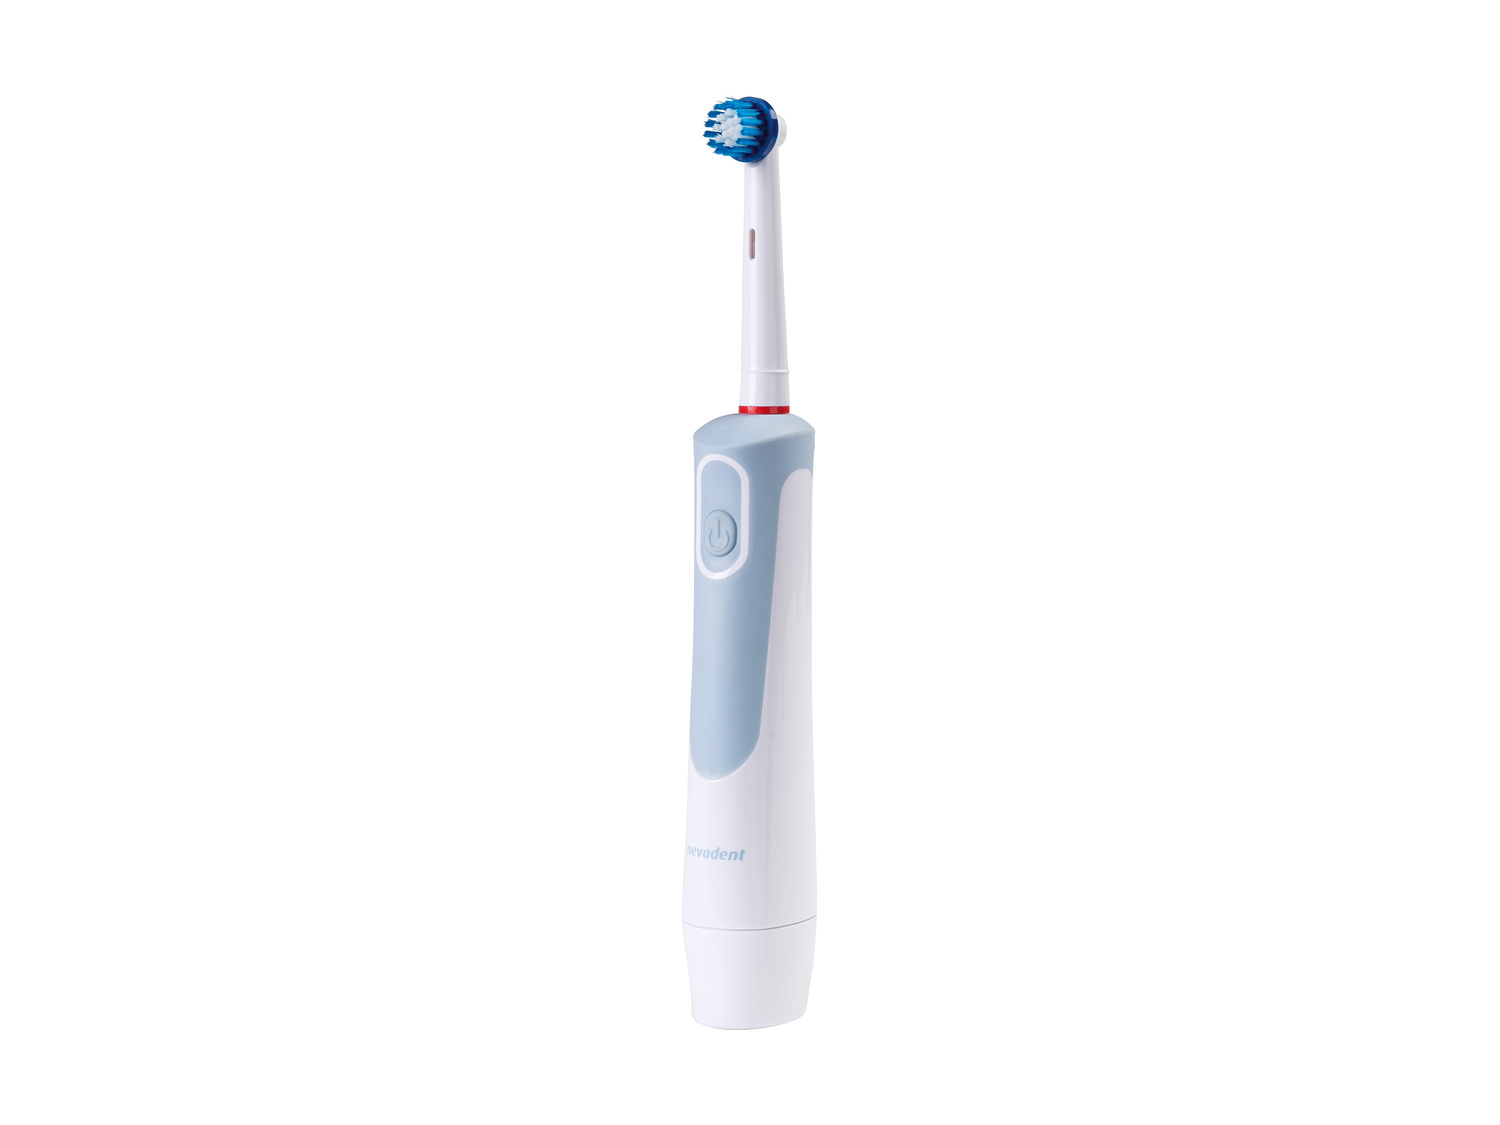 Brosse à dents électrique , le prix 6.99 € 
- Pour éliminer la plaque dentaire
- ...